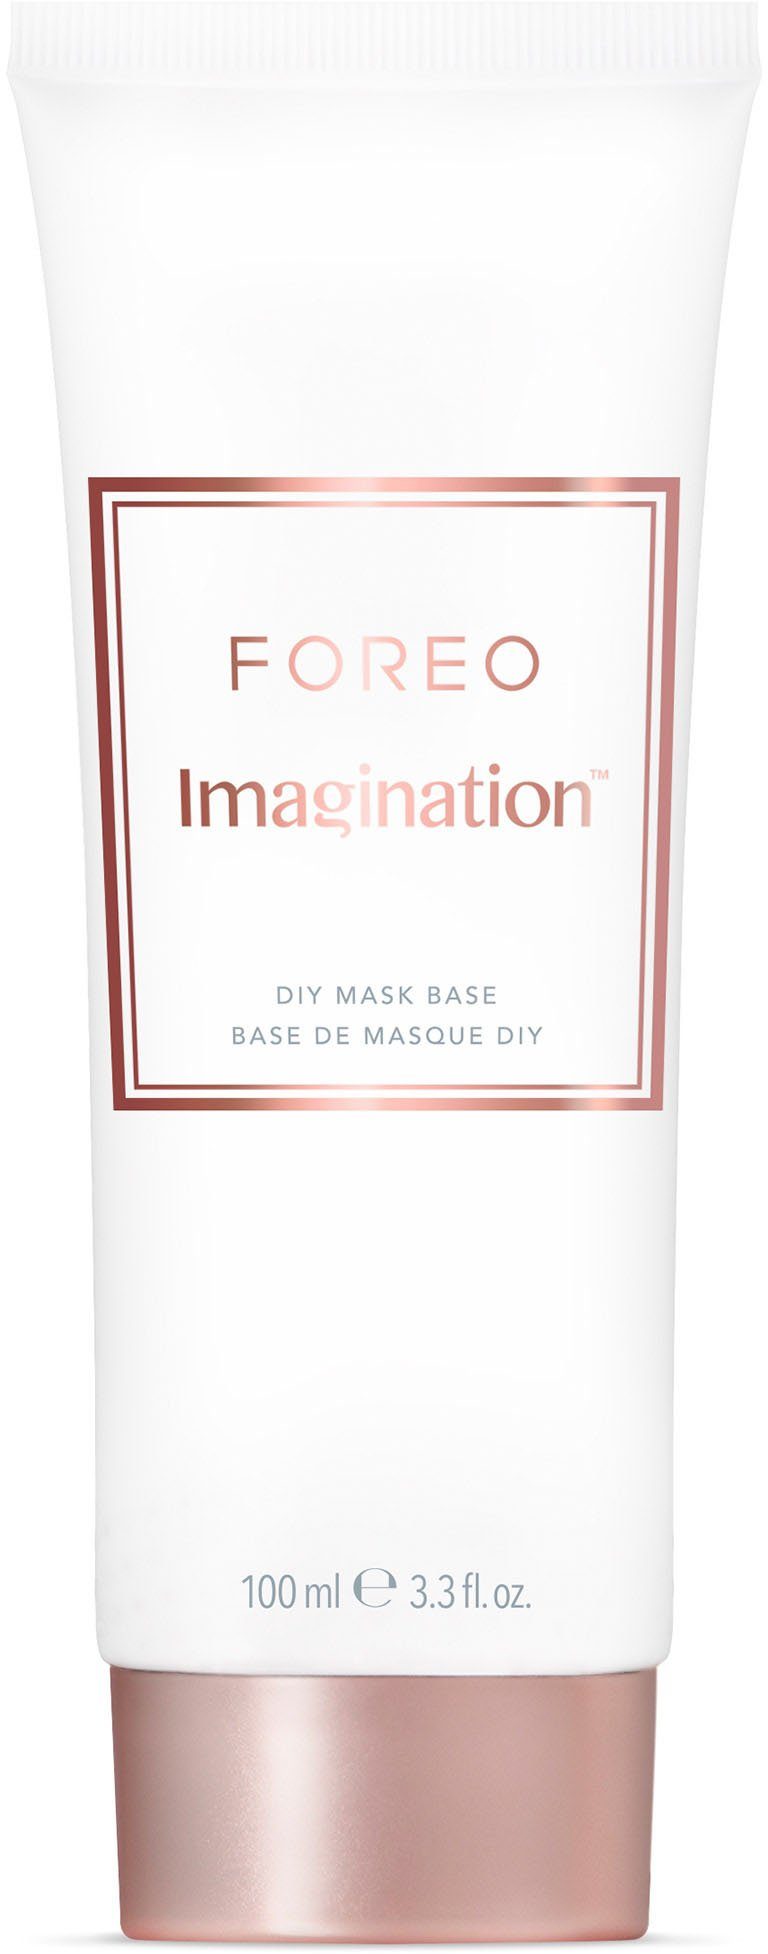 FOREO Mask DIY 100ml Imagination Base Gesichtsmaske